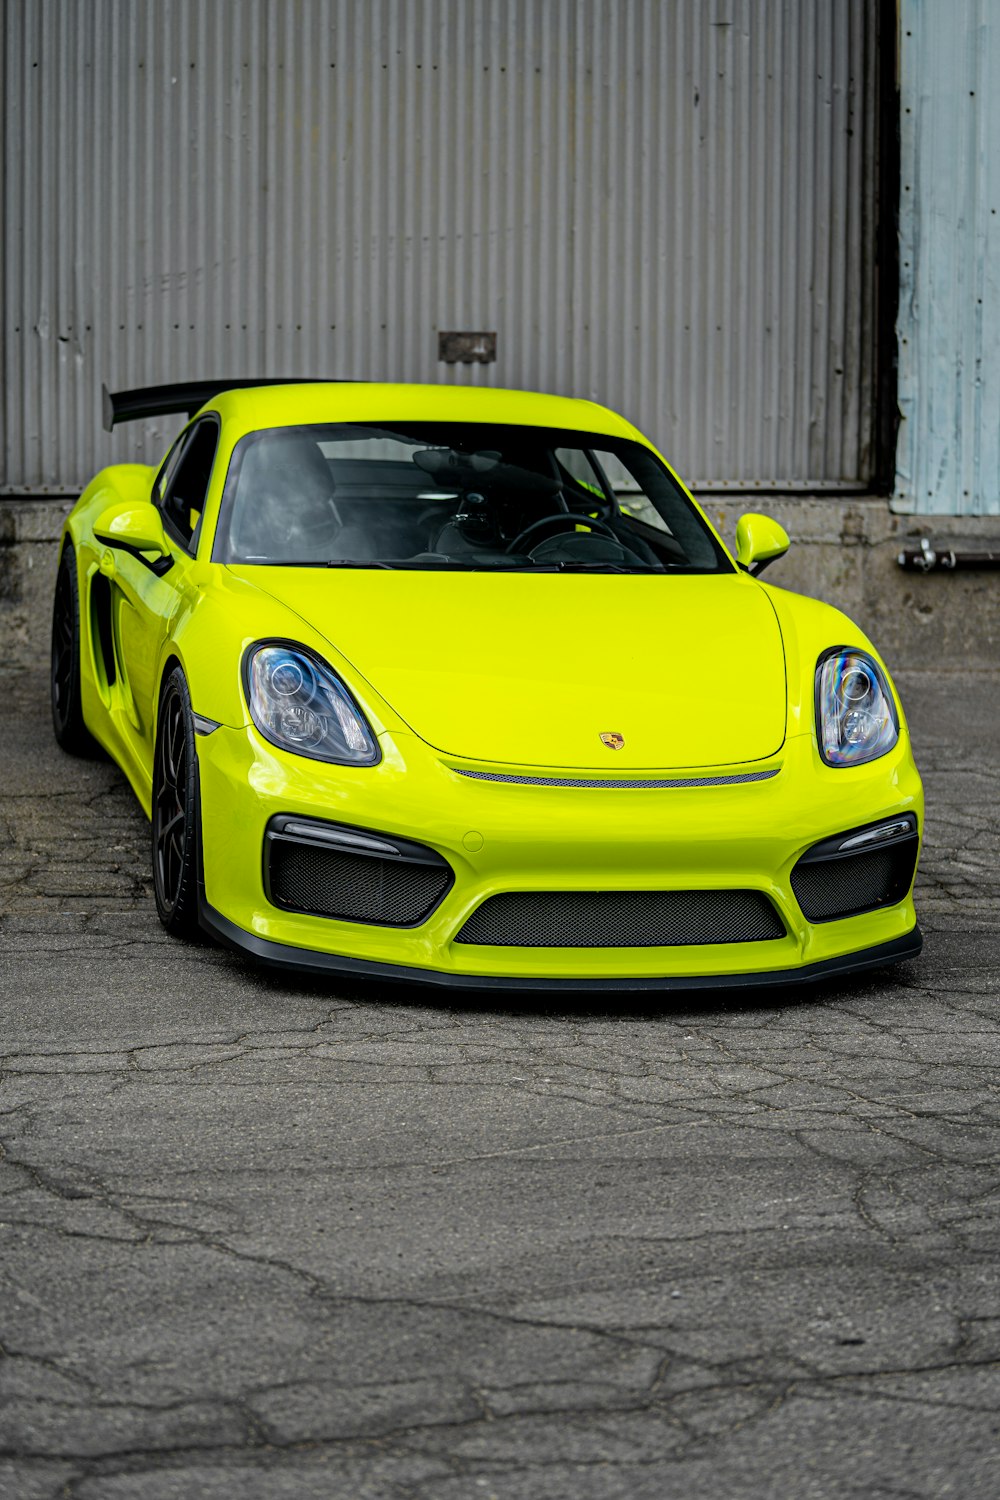 Porsche amarelo 911 estacionado perto de edifício branco